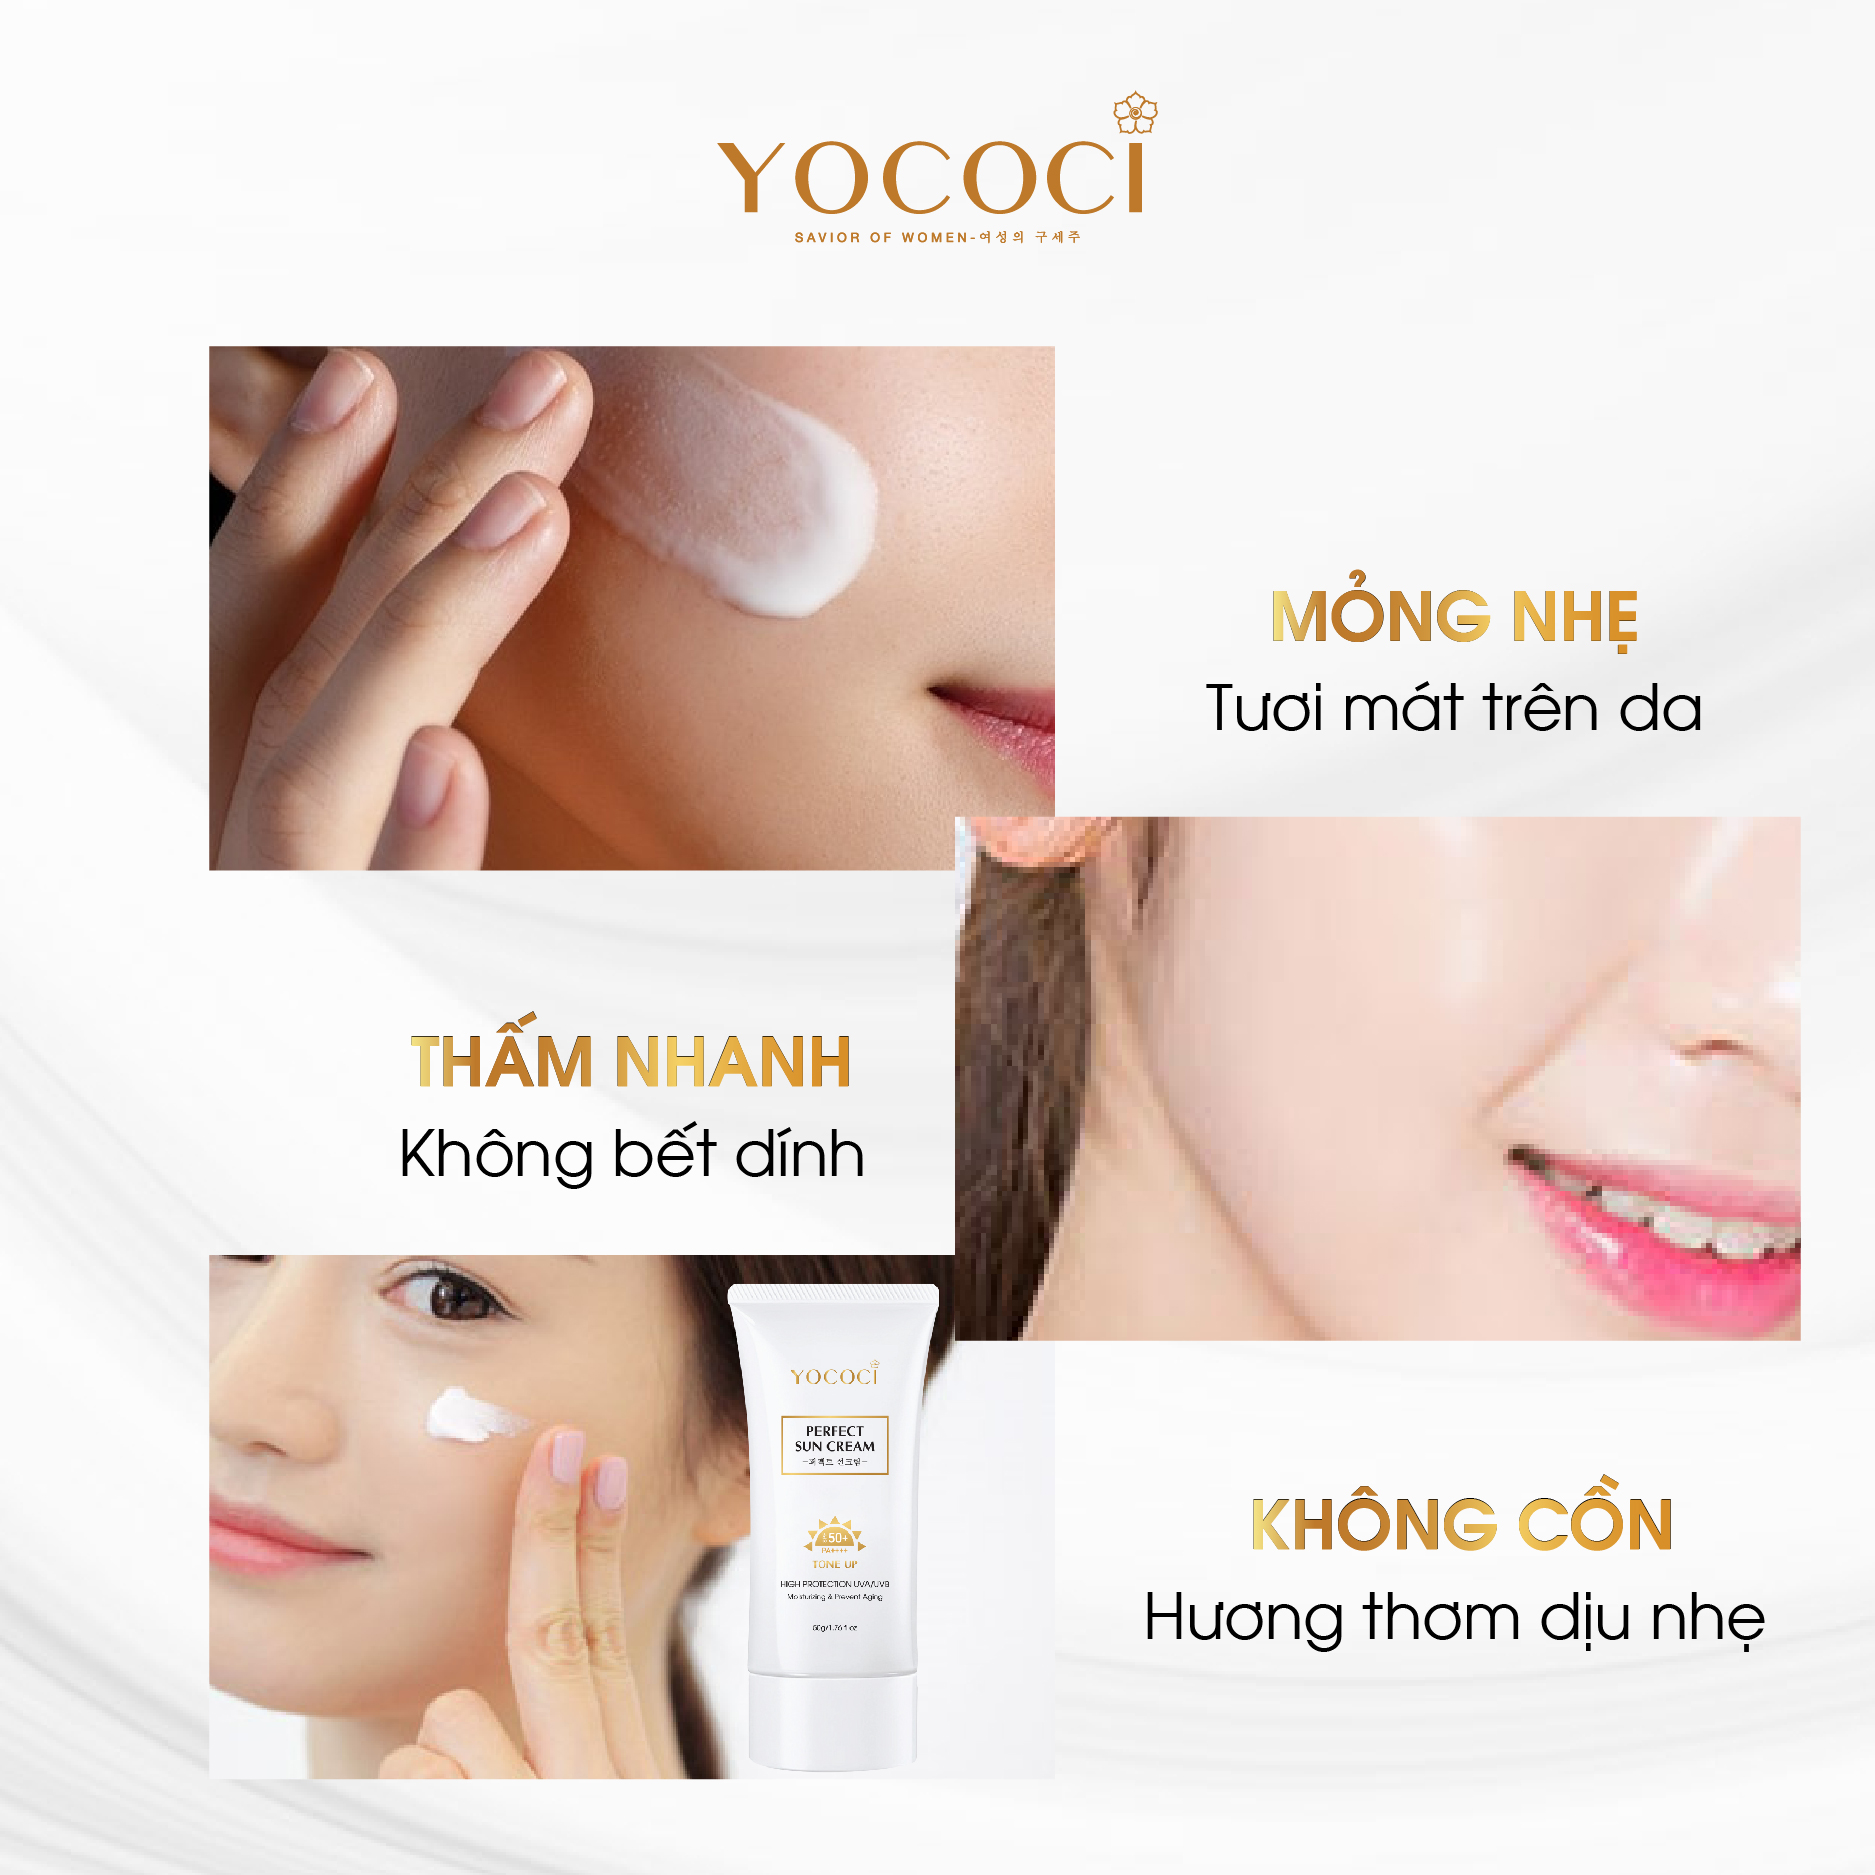 Bộ 4 sản phẩm Yococi (Kem Chống Nắng 50g + Kem Face 20g + Serum 20ml + Tẩy Trang 100g)